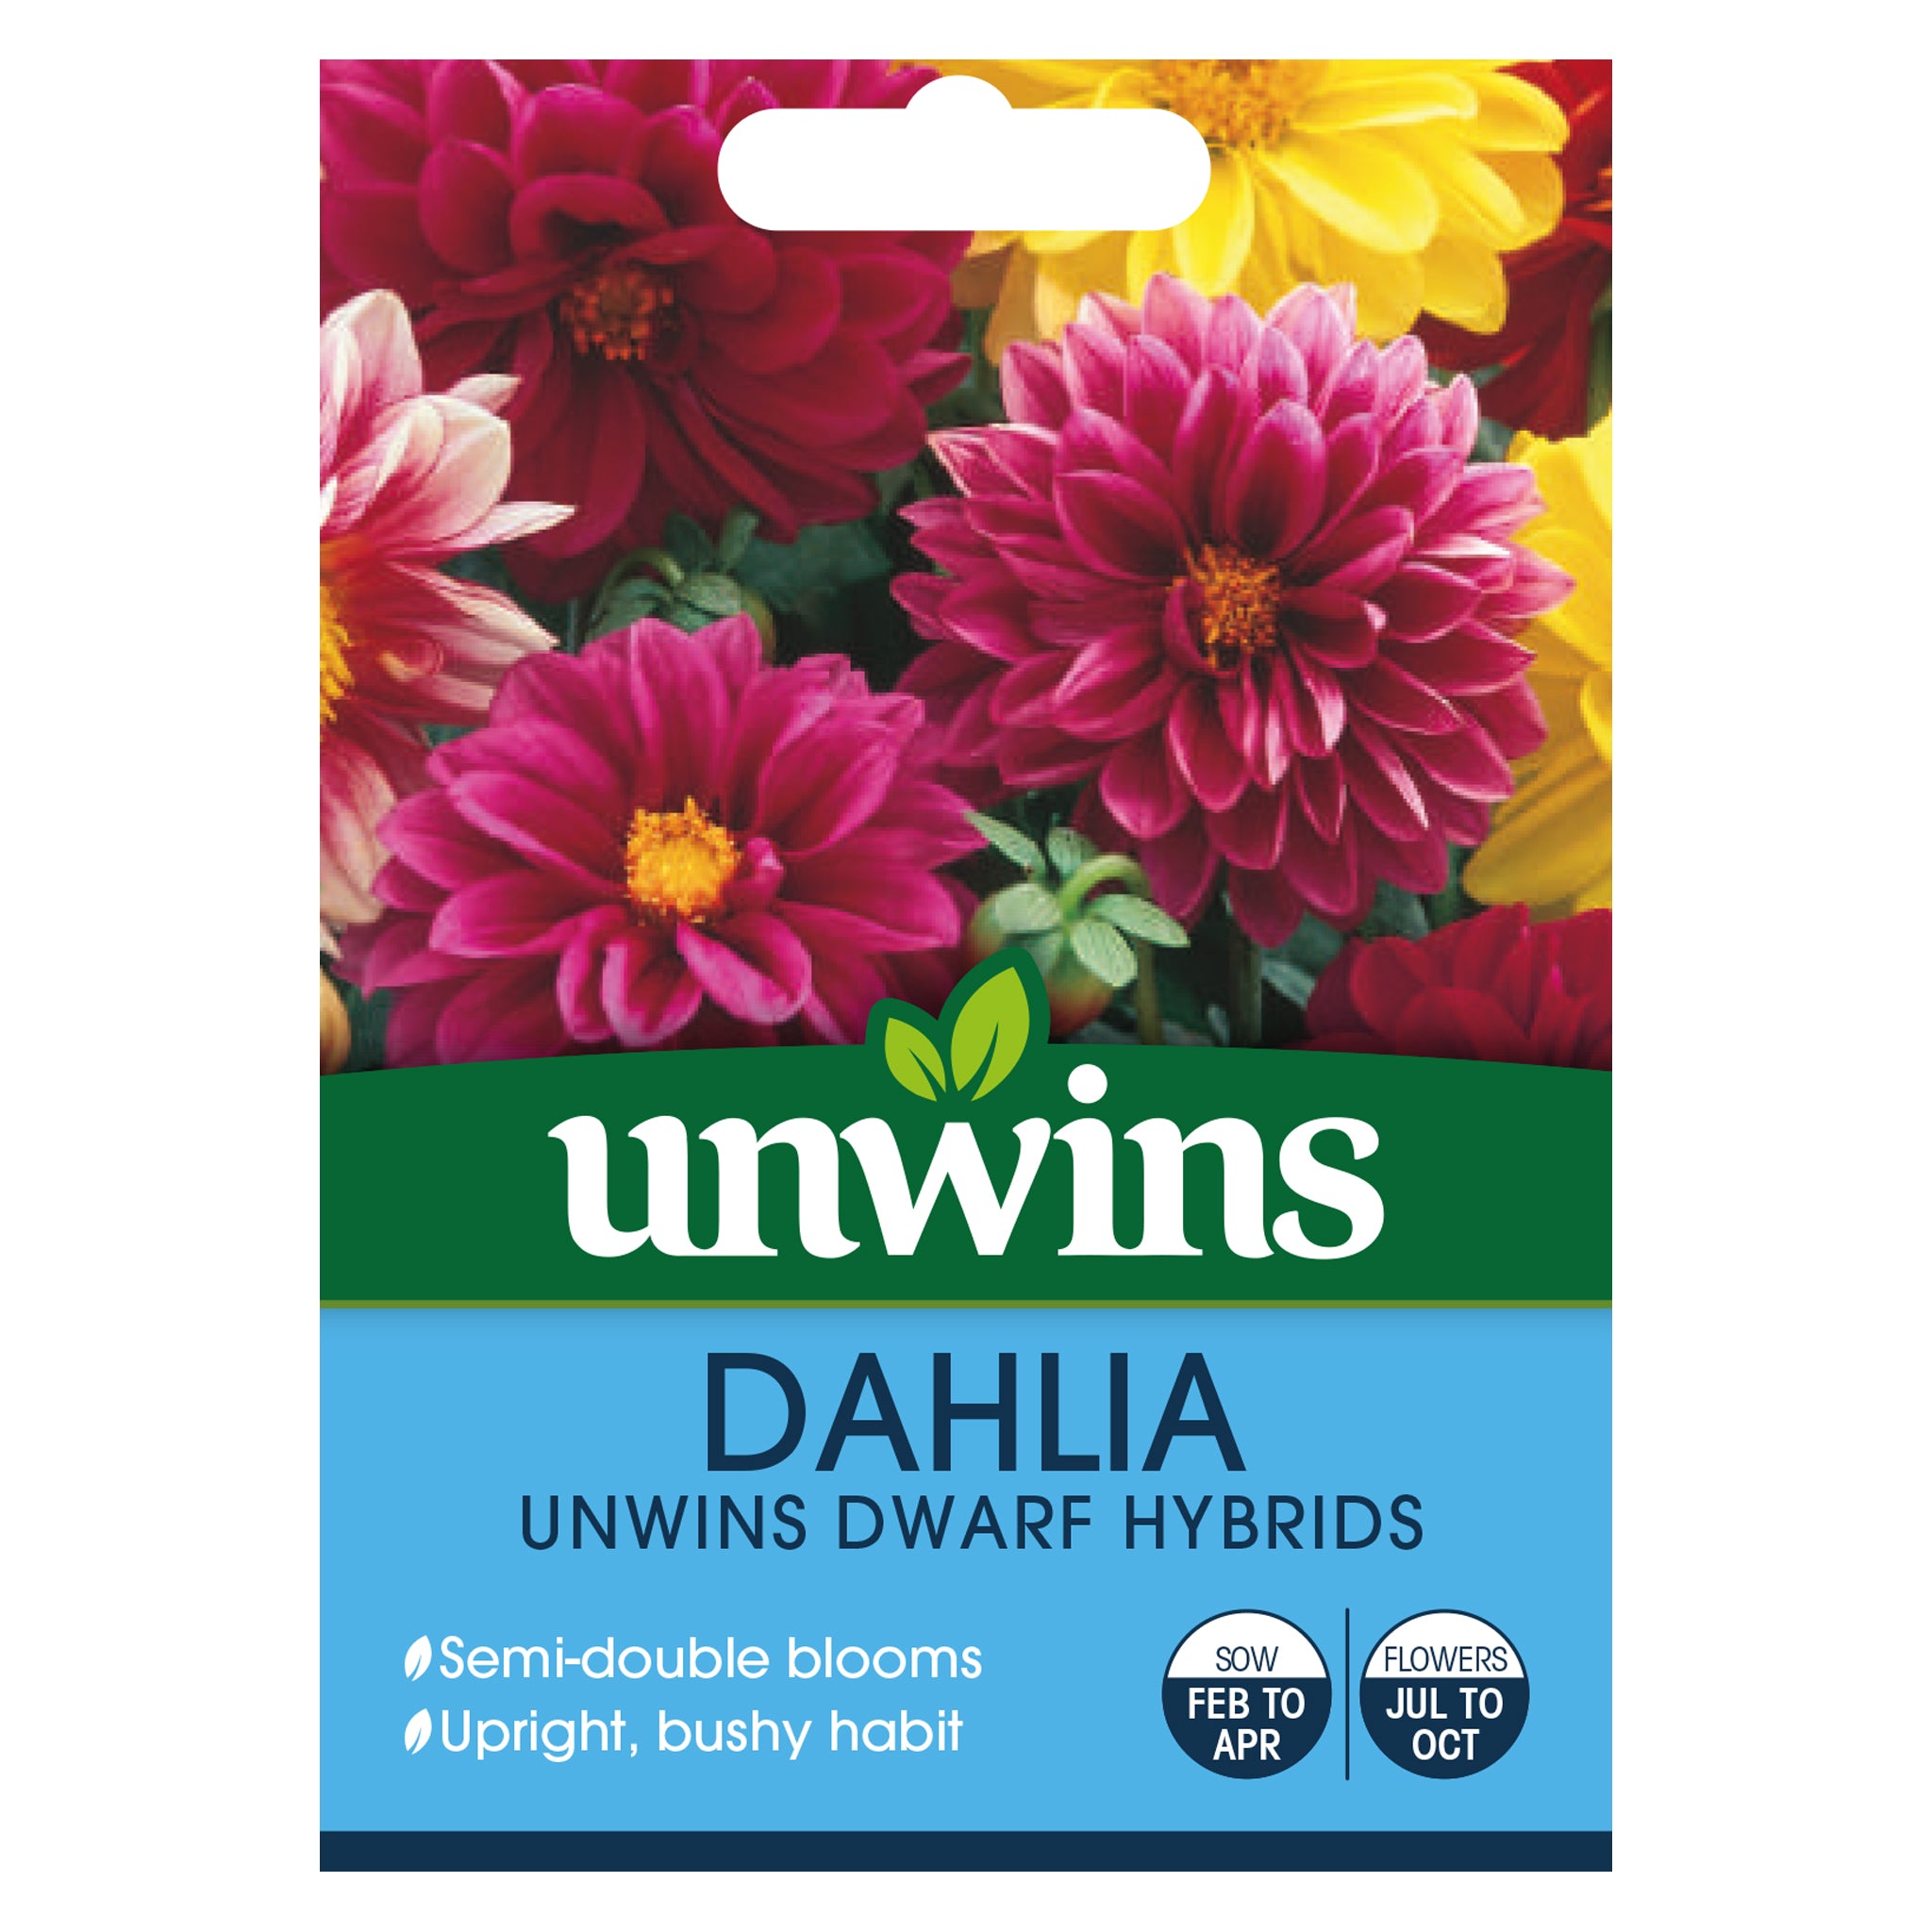 Unwins Dahlia Unwins Dwarf Hybrids Seeds